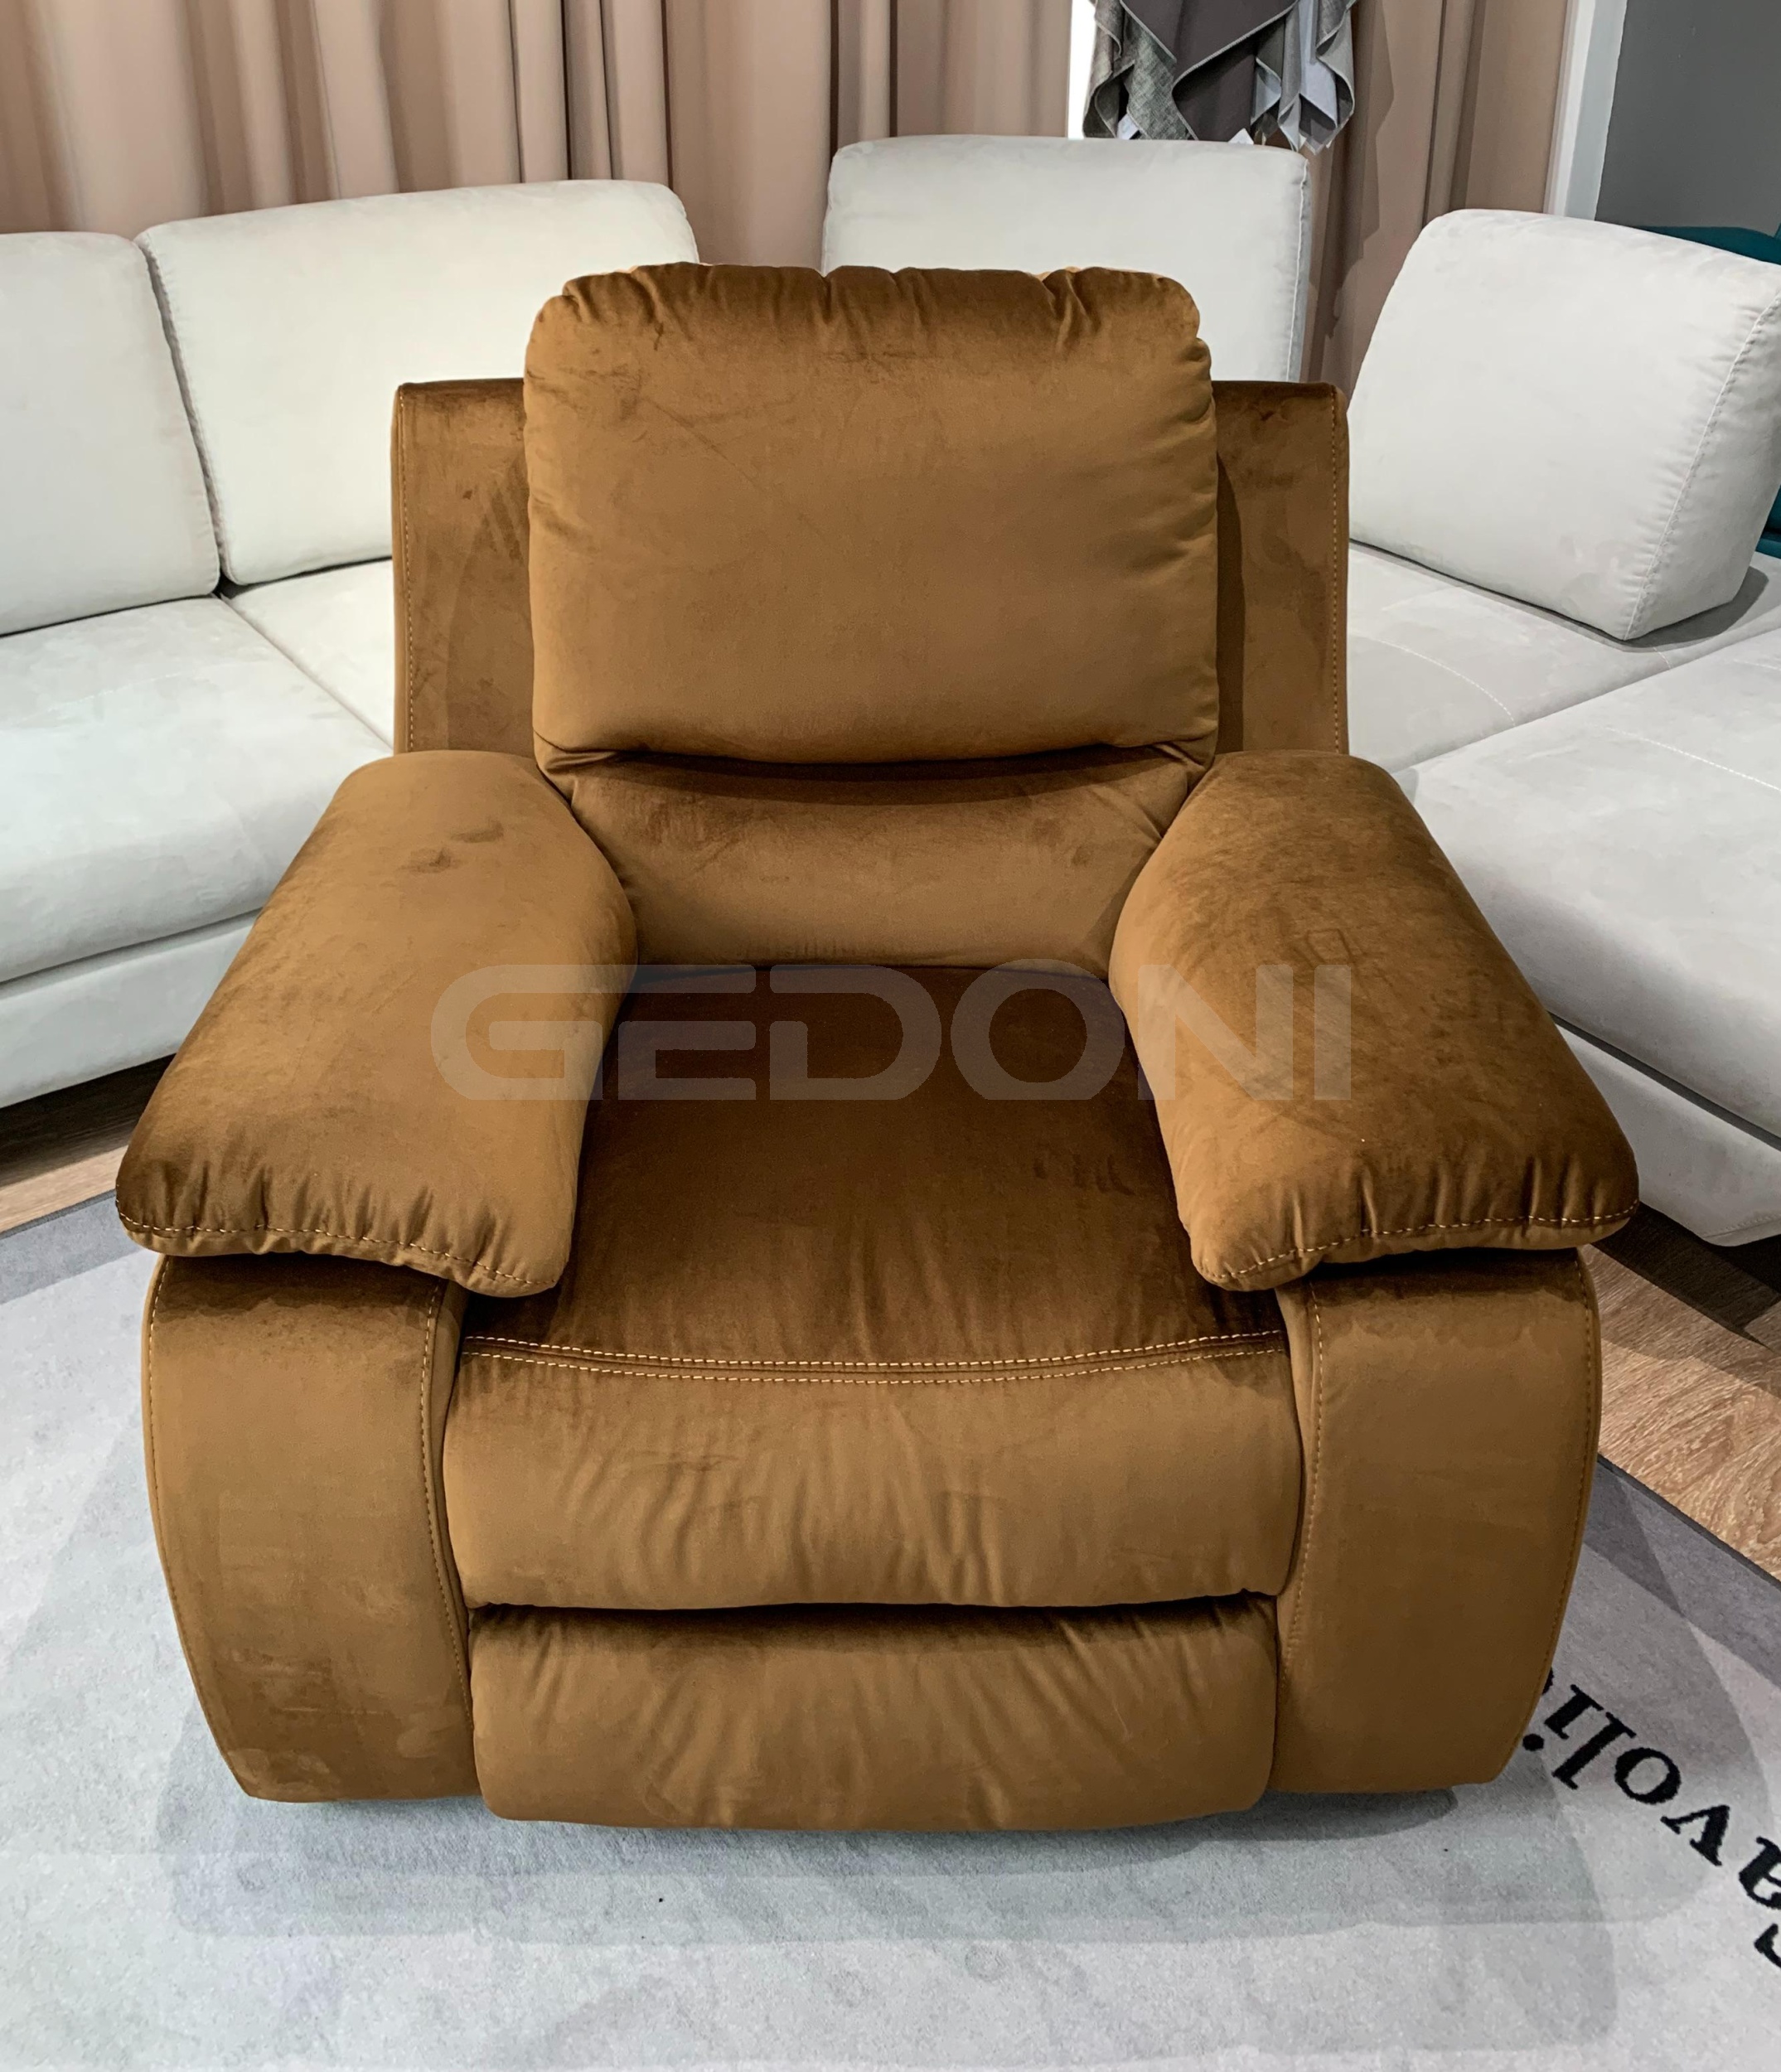 Мягкое кресло с механическим реклайнером Premium купить в СПб - Gedoni